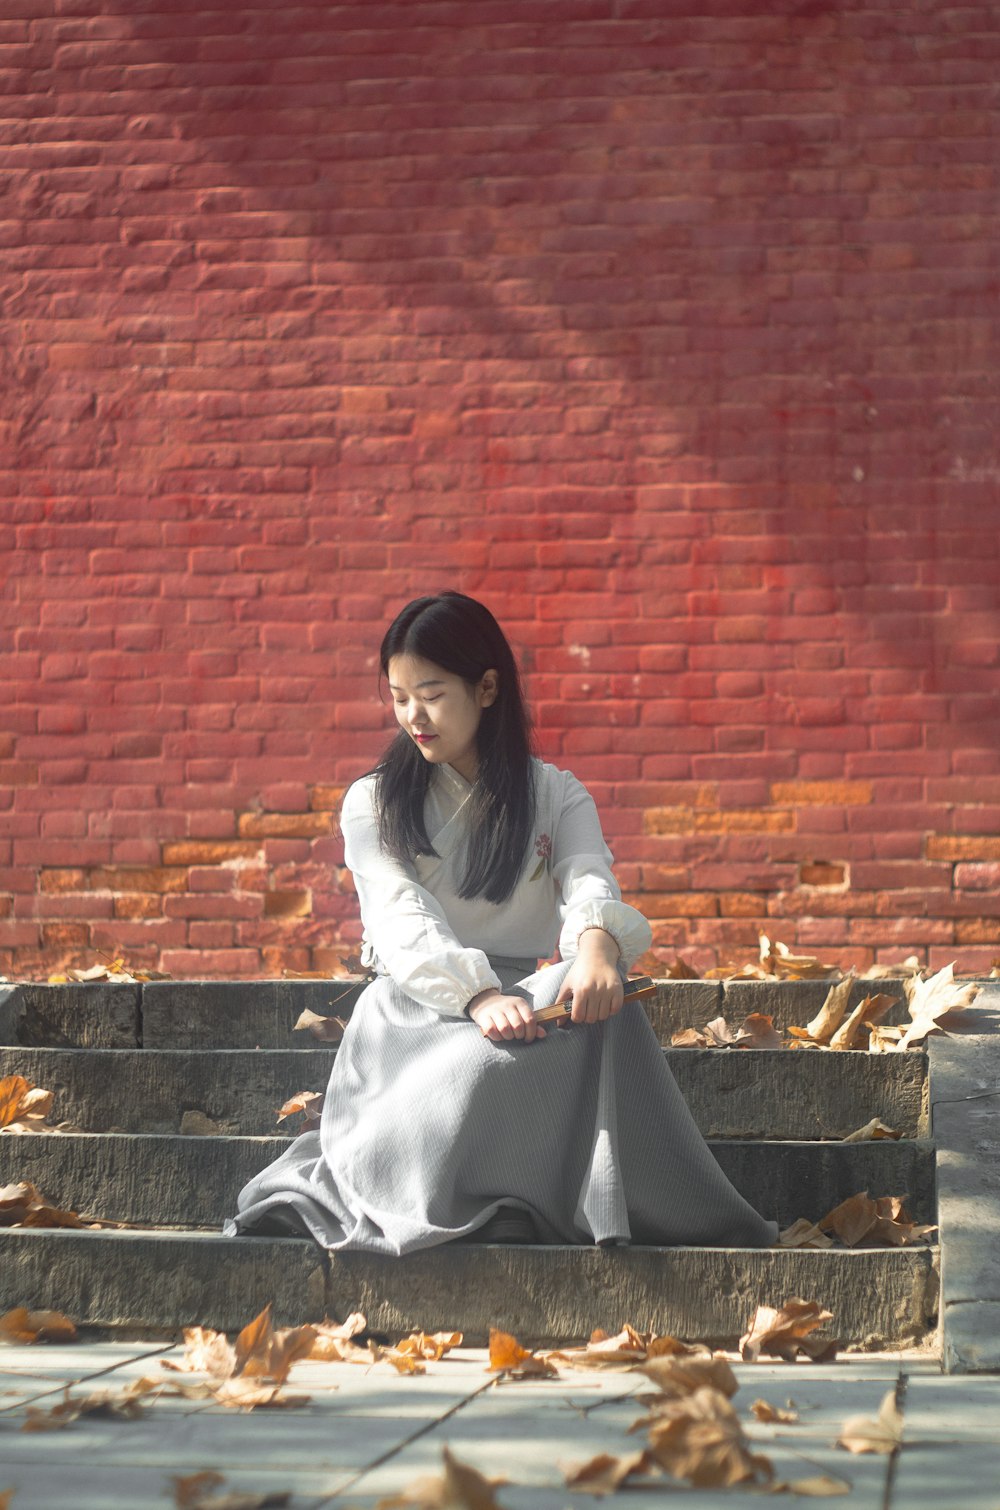 昼間、葉っぱの近くの灰色の階段に座っている女性